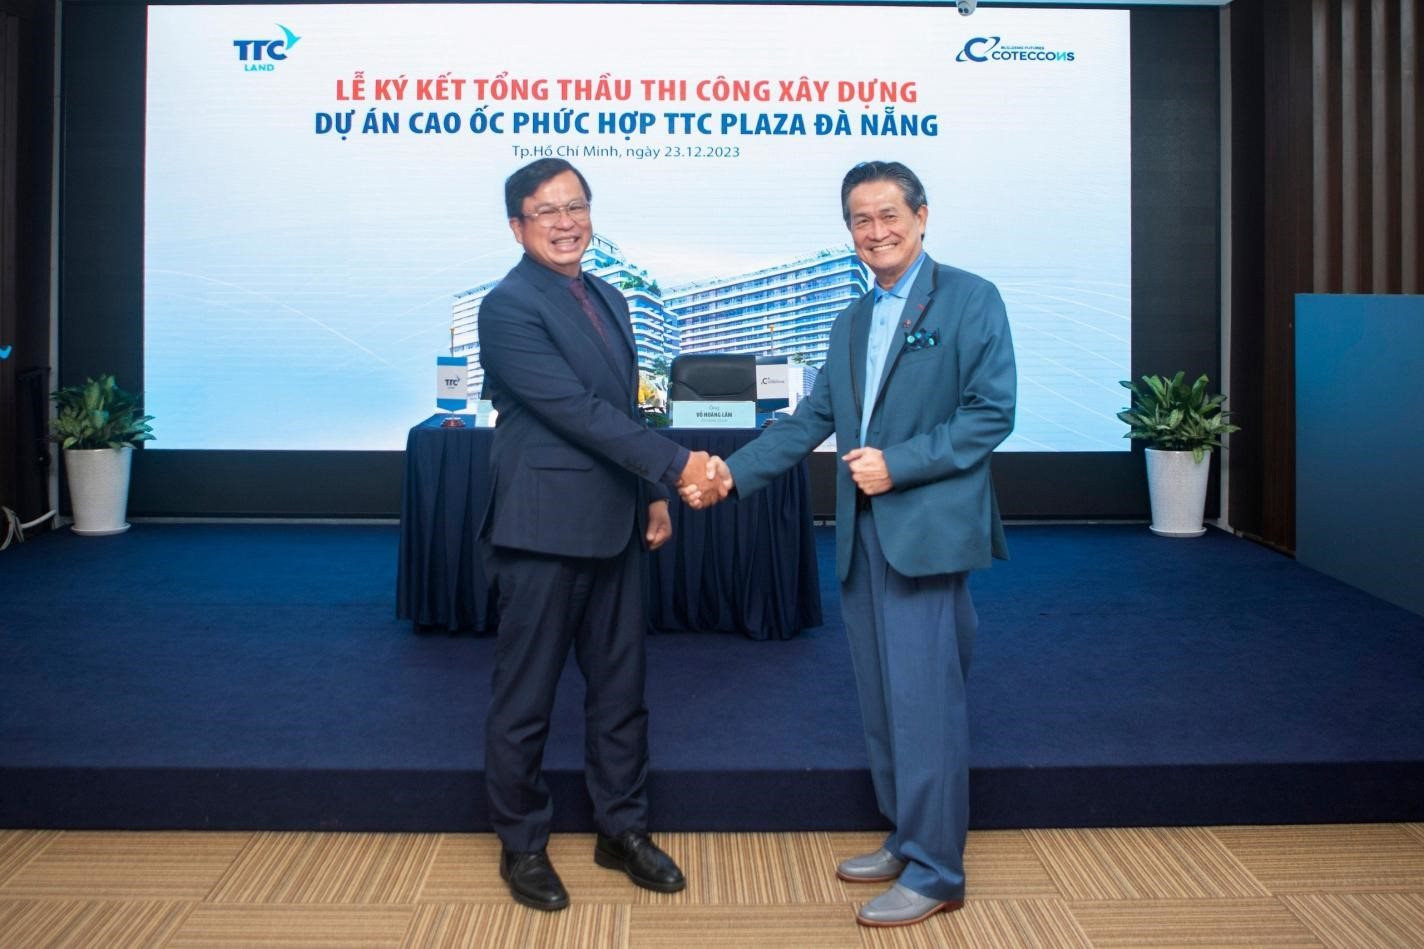 Coteccons và TTC Land hợp tác thi công xây dựng Dự án TTC Plaza Đà Nẵng - Ảnh 1.